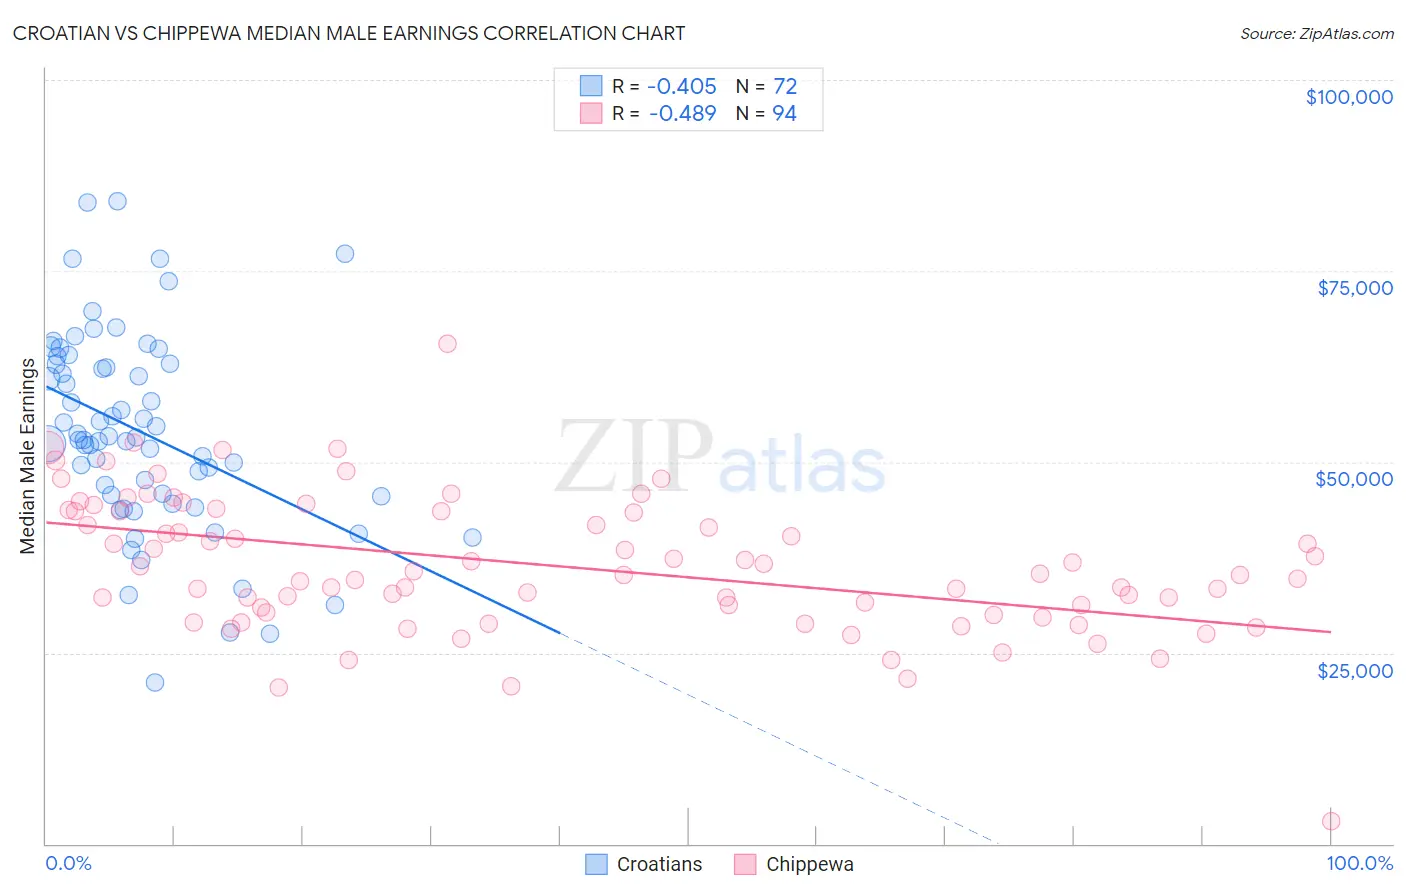 Croatian vs Chippewa Median Male Earnings